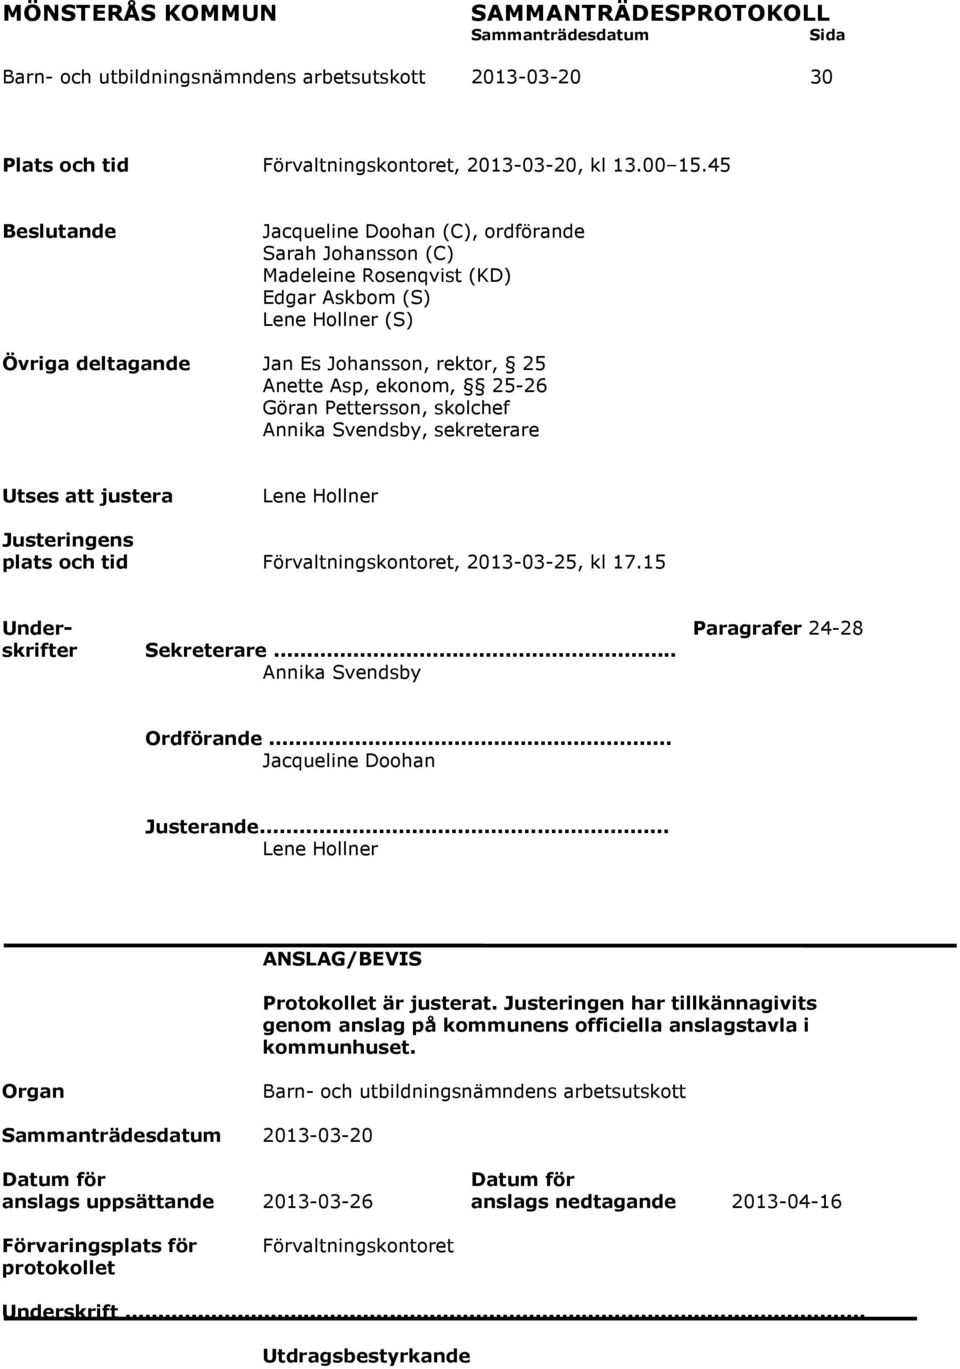 25-26 Göran Pettersson, skolchef Annika Svendsby, sekreterare Utses att justera Lene Hollner Justeringens plats och tid Förvaltningskontoret, 2013-03-25, kl 17.